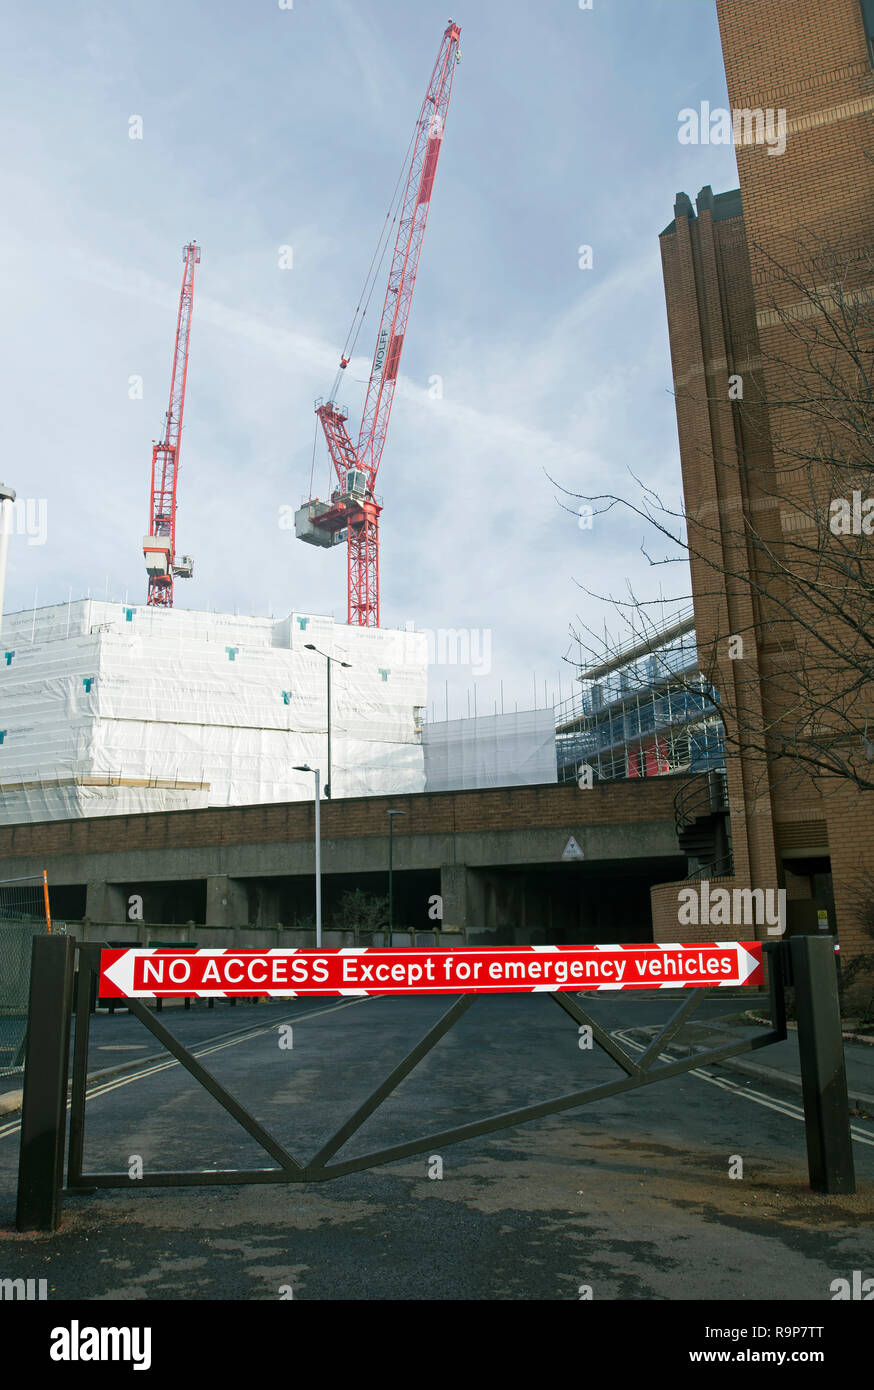 Le rouge et le blanc pas d'accès à l'exception des véhicules d'urgence signe sur un obstacle routier à Twickenham, Middlesex, Angleterre, avec des grues en arrière-plan Banque D'Images